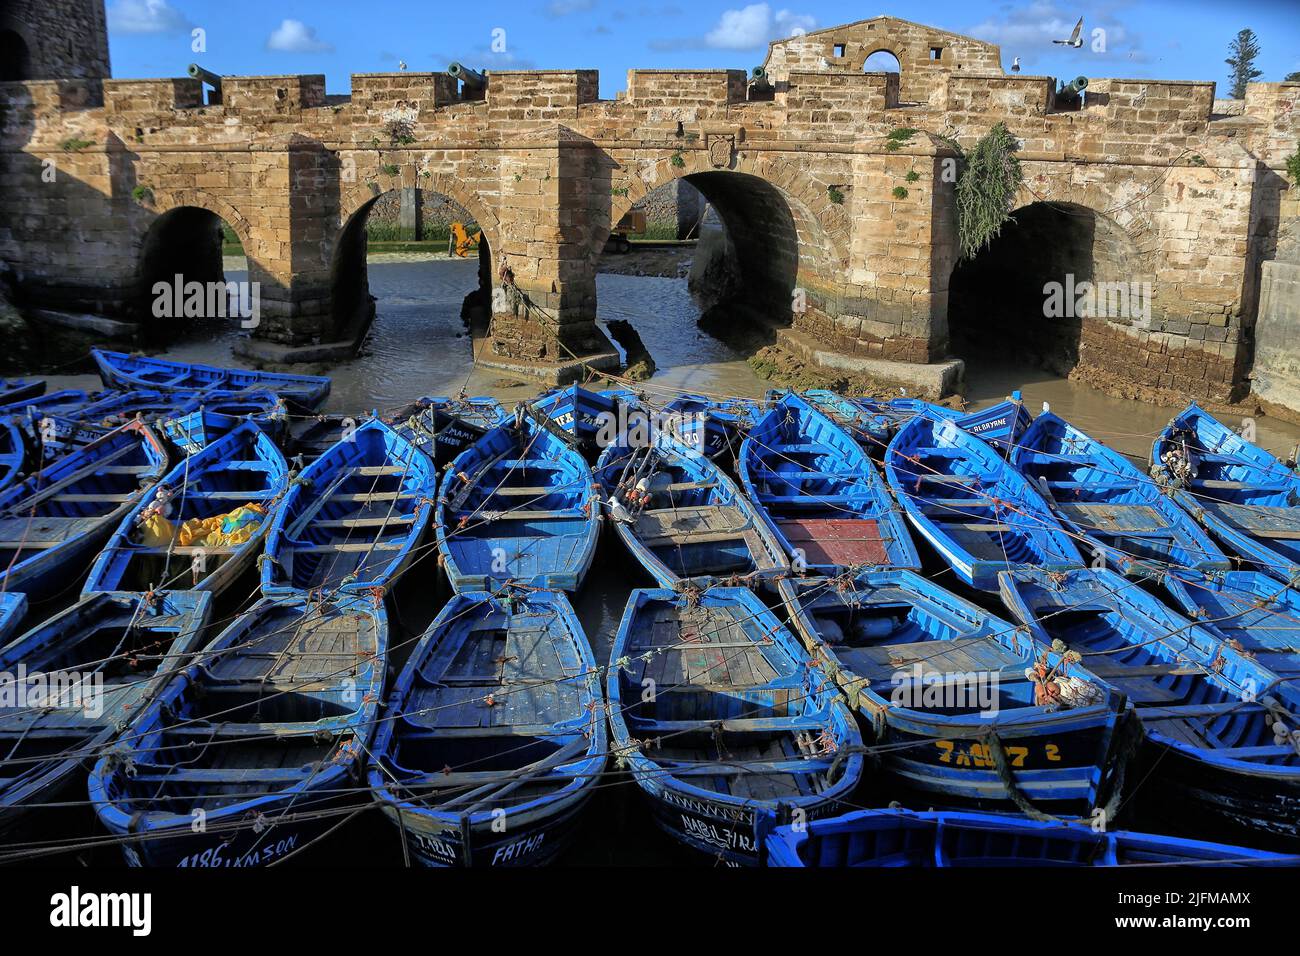 Marokko Essaouria Hafen- blaue Fischerboote vor der Festung 'Castelo Real de Mogador' Stock Photo